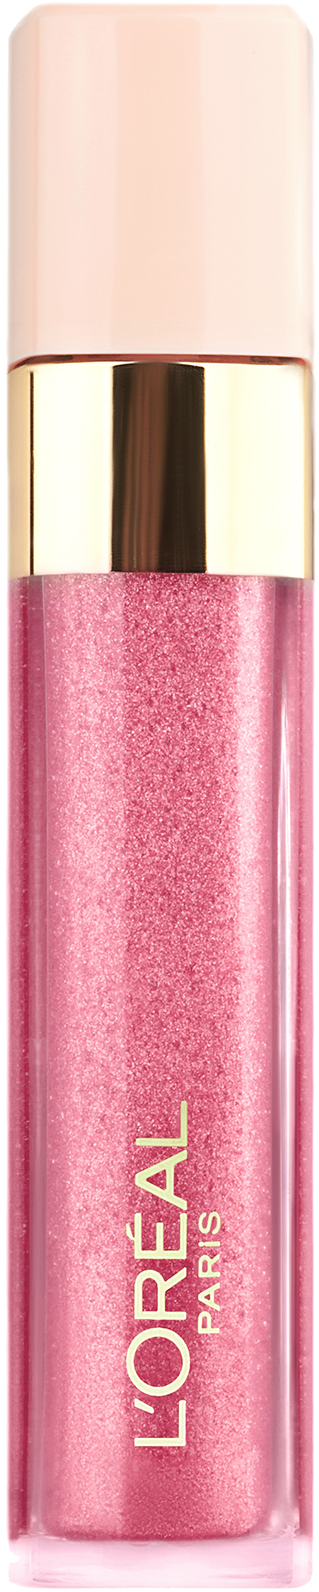 LOreal Paris Infaillible Mega gloss Безупречный блеск для губ мерцающий, 213, Розовая вечеринка